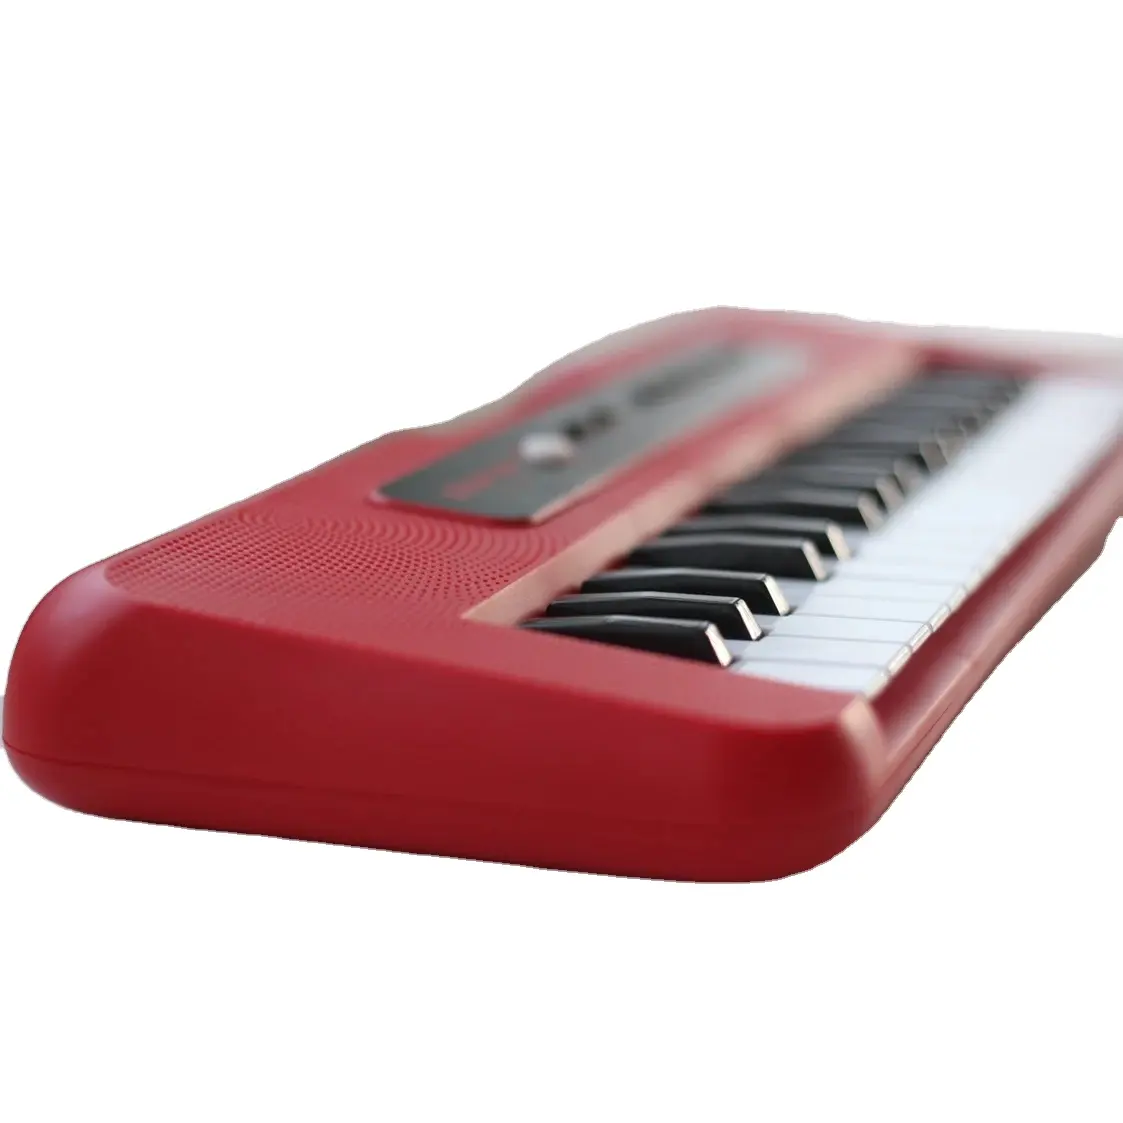 Instrumentos de teclado de juguete Musical para niños, caja de regalo electrónica educativa de 37 teclas, órgano ABS Unisex, juguetes musicales para bebés de plástico